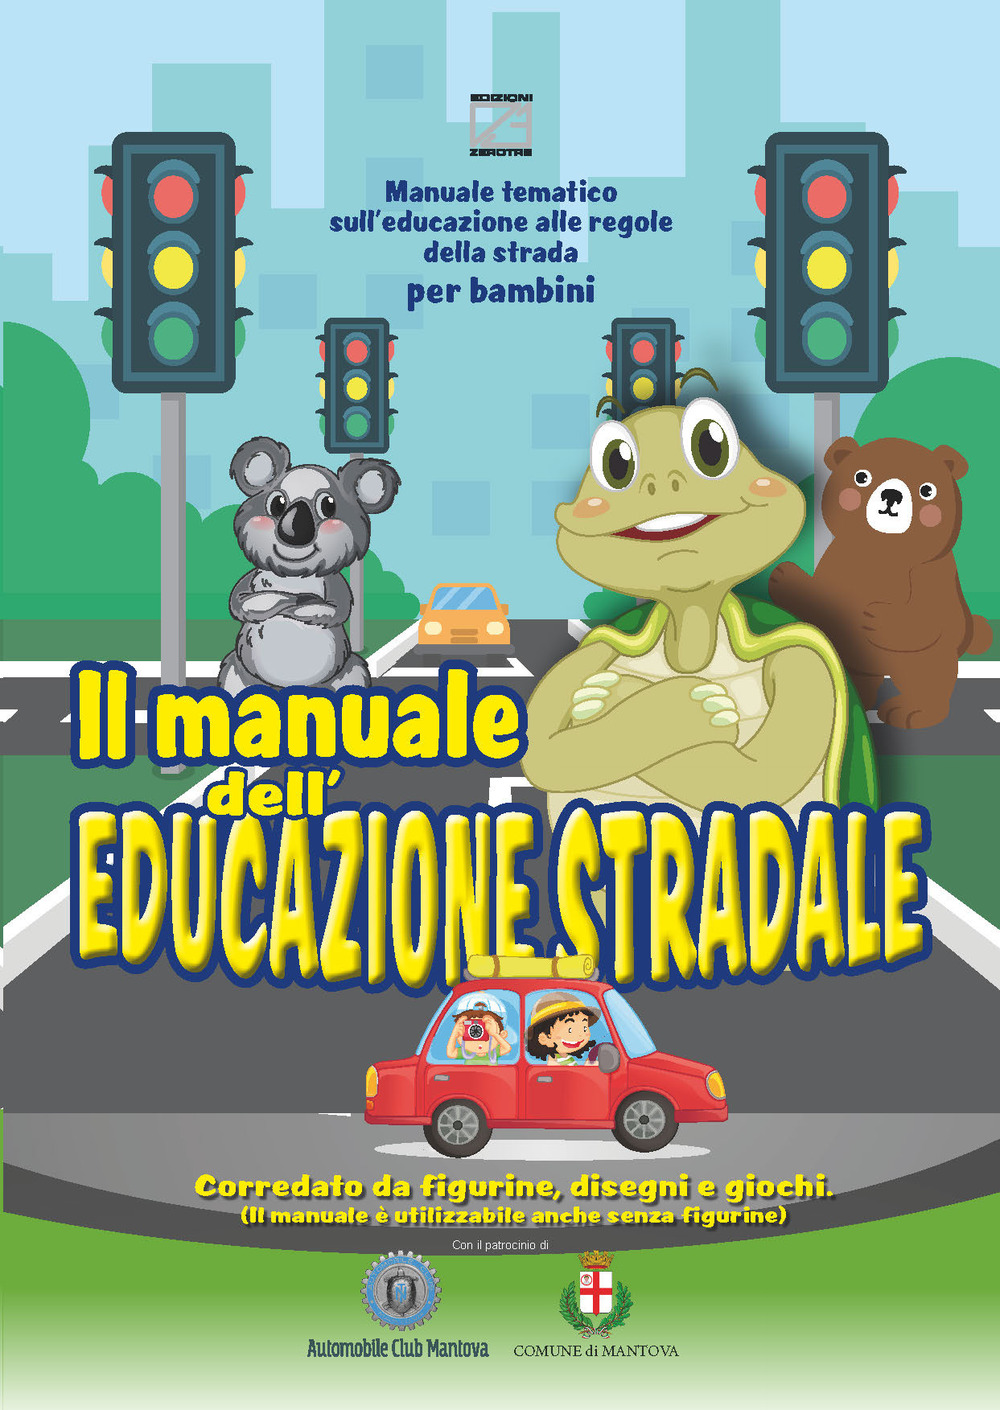 Il manuale dell'educazione stradale. Manuale tematico sull'educazione alle regole della strada per bambini